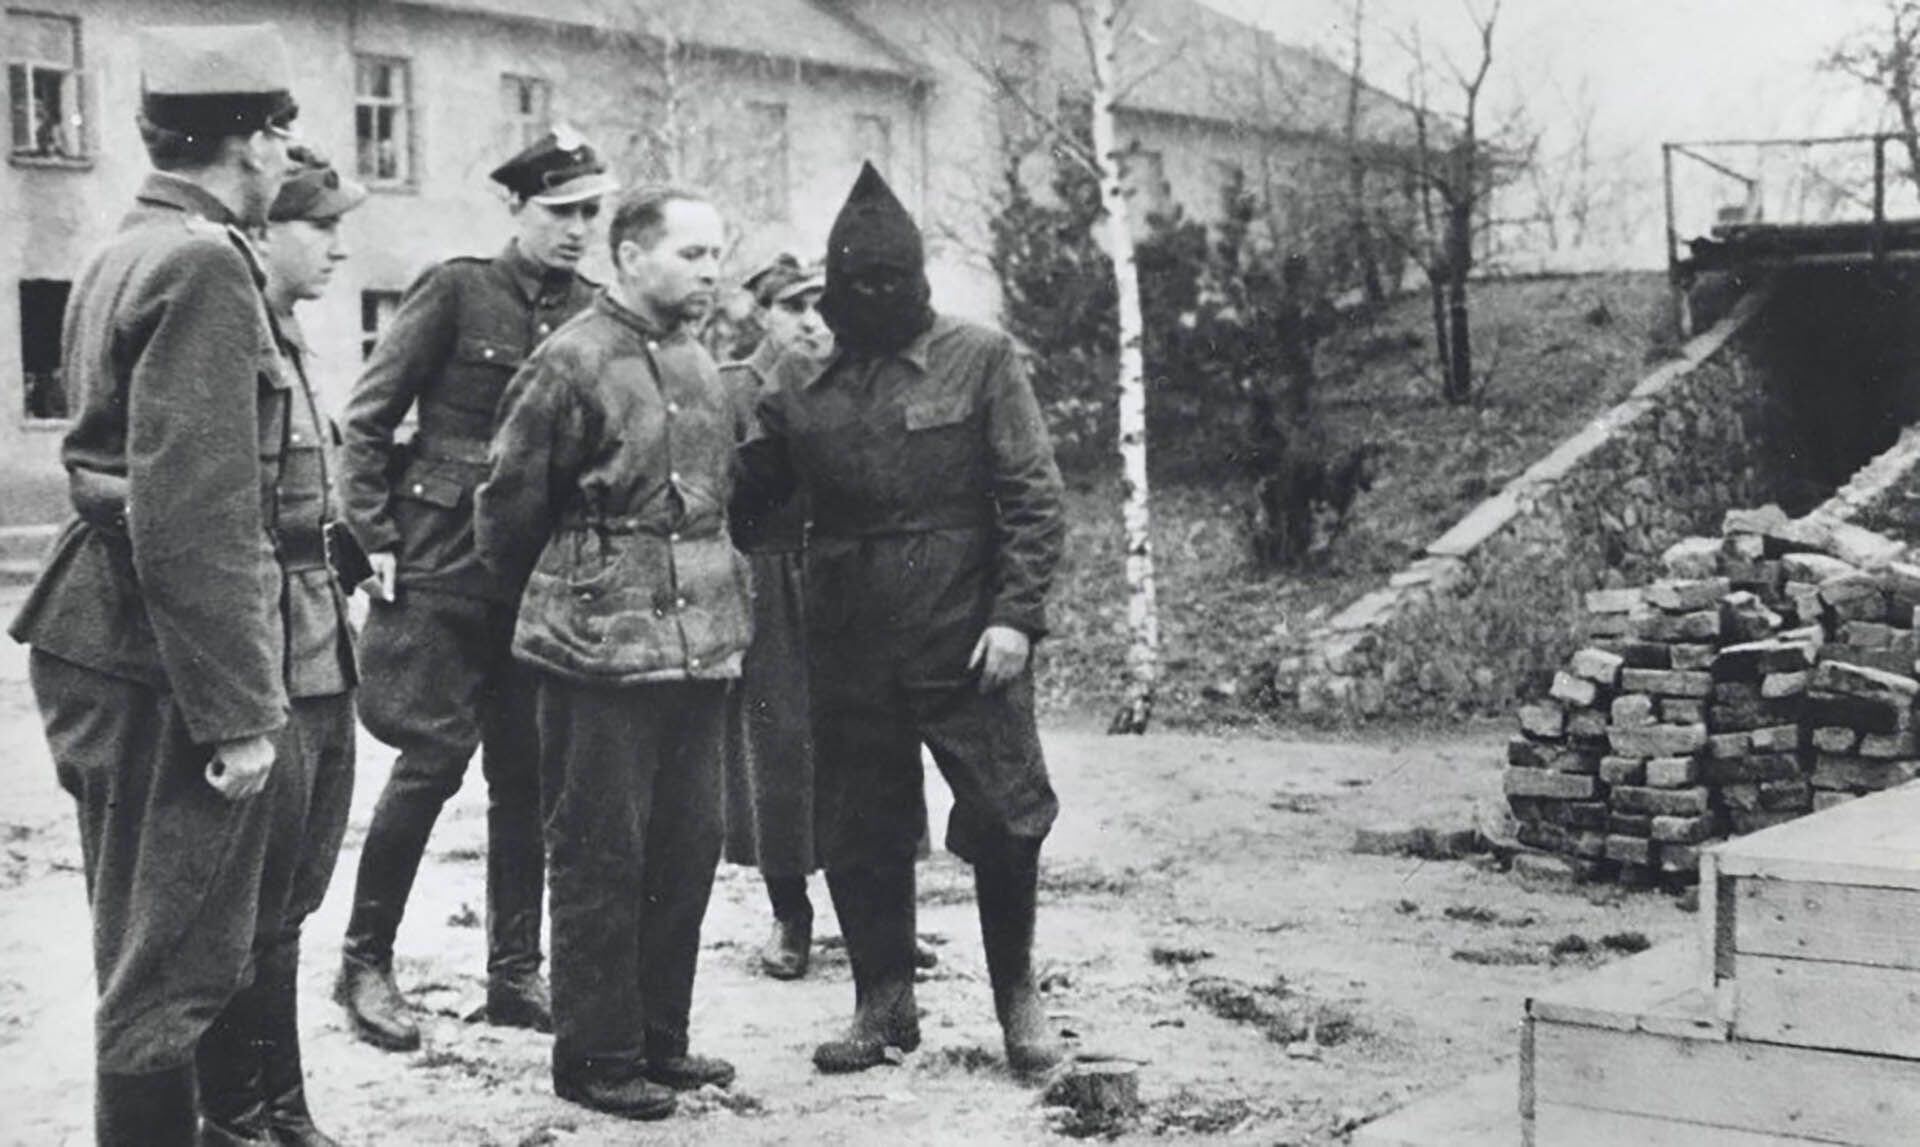 El británico Victor Cross tuvo un papel clave en la captura del comandante de Auschwitz, quien fue juzgado y condenado a la horca.